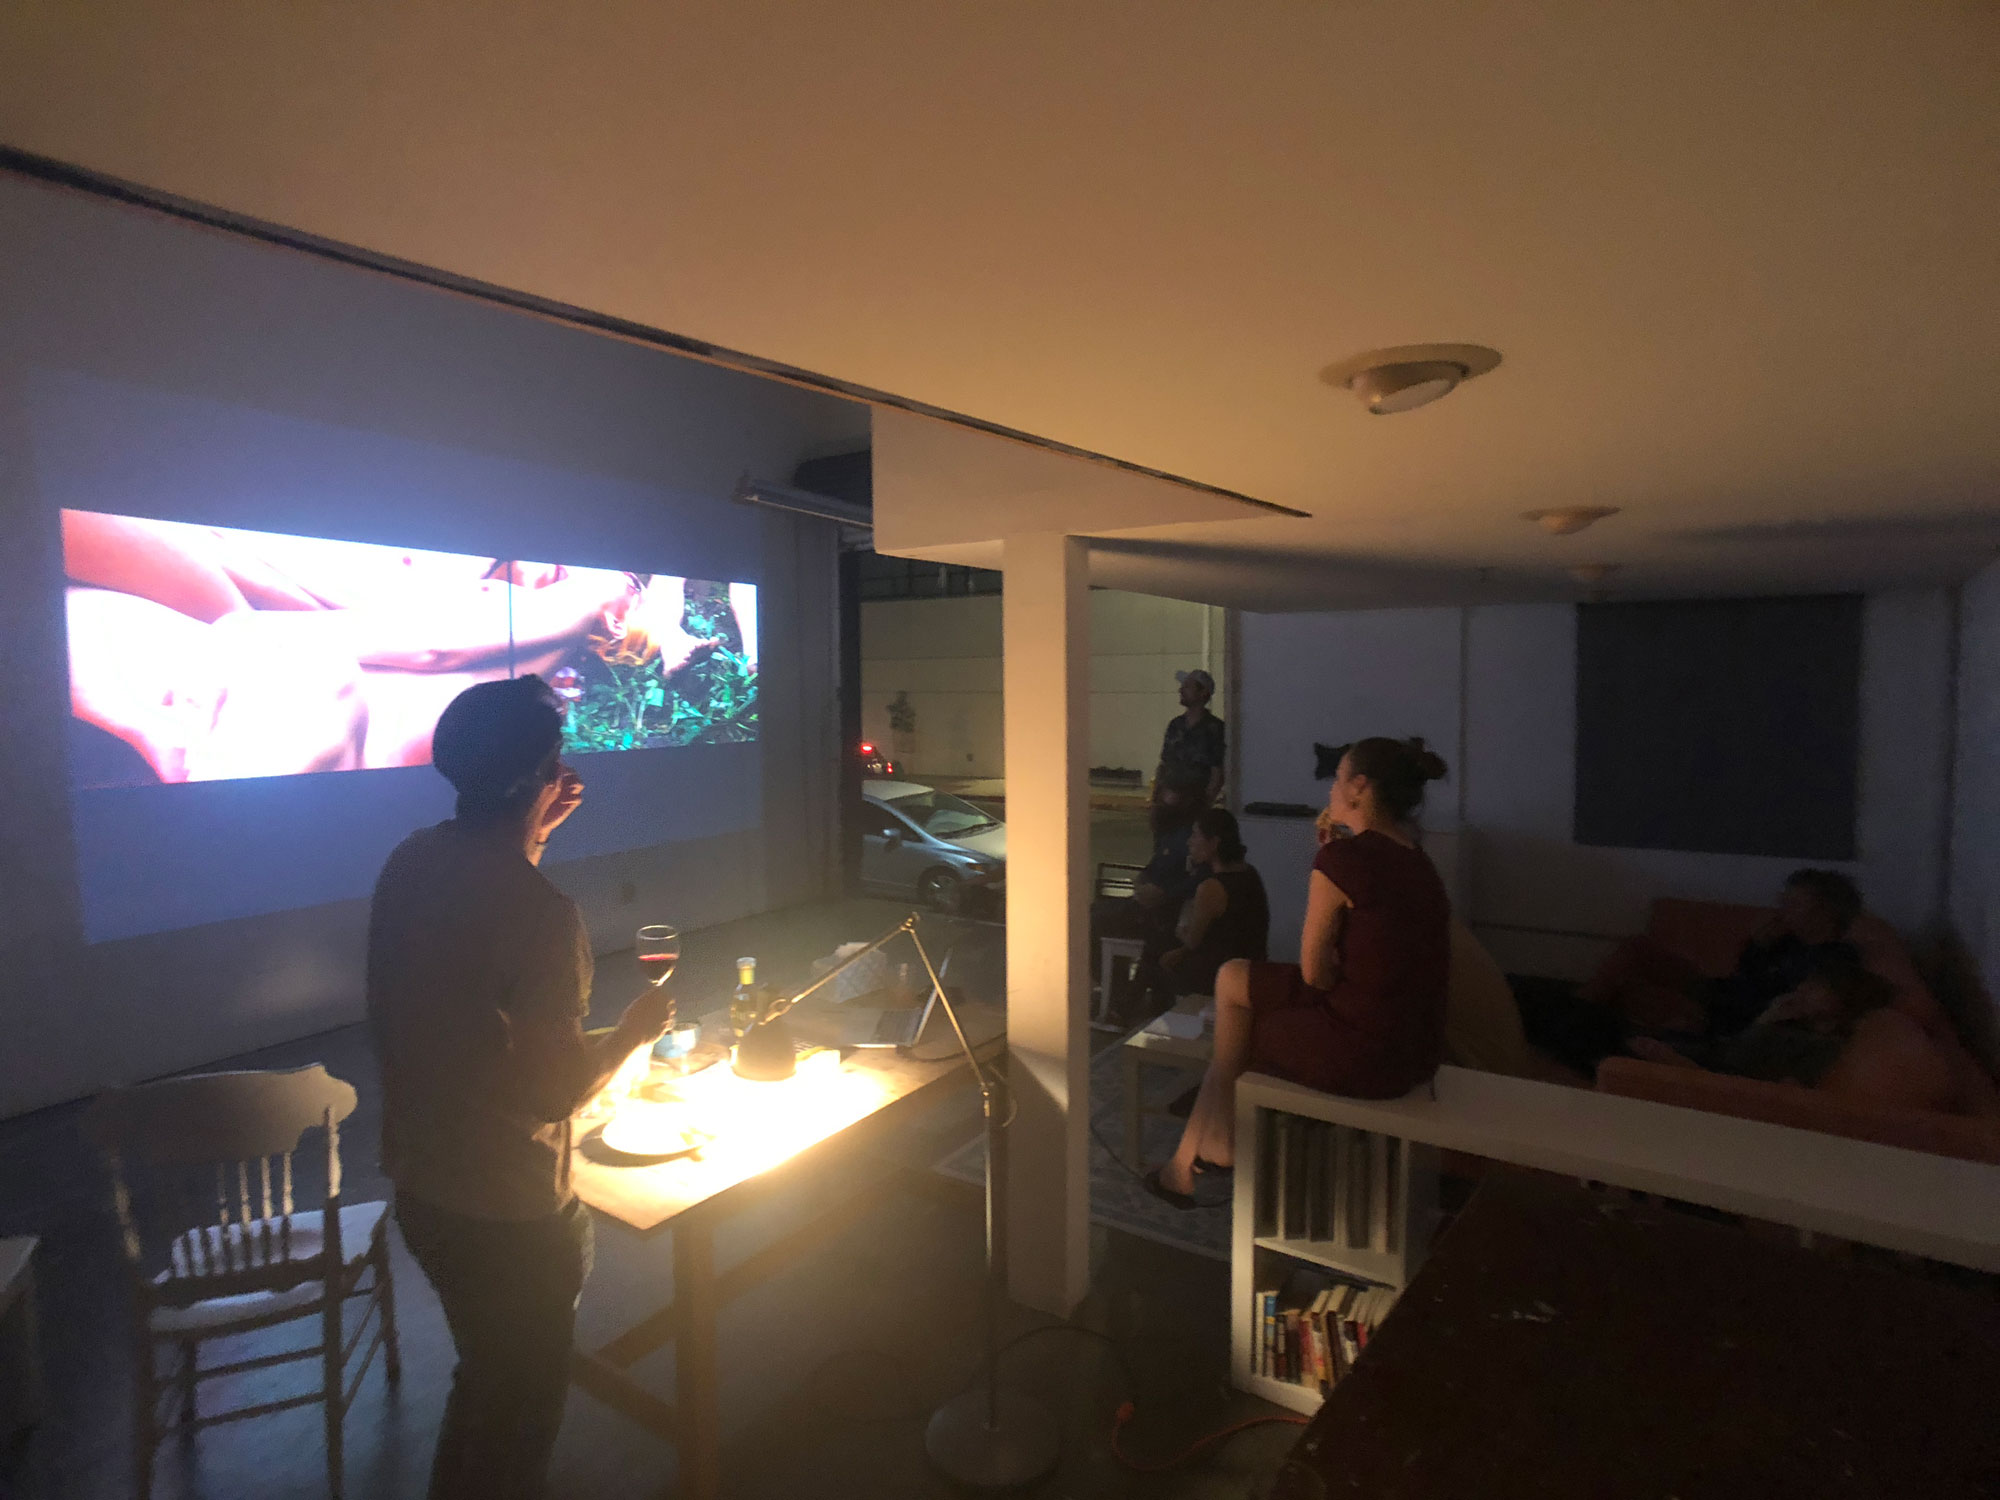 2019 年 9 月，聖塔摩尼加十八街藝術中心開放工作室日，來賓於蘇匯宇工作室參觀作品